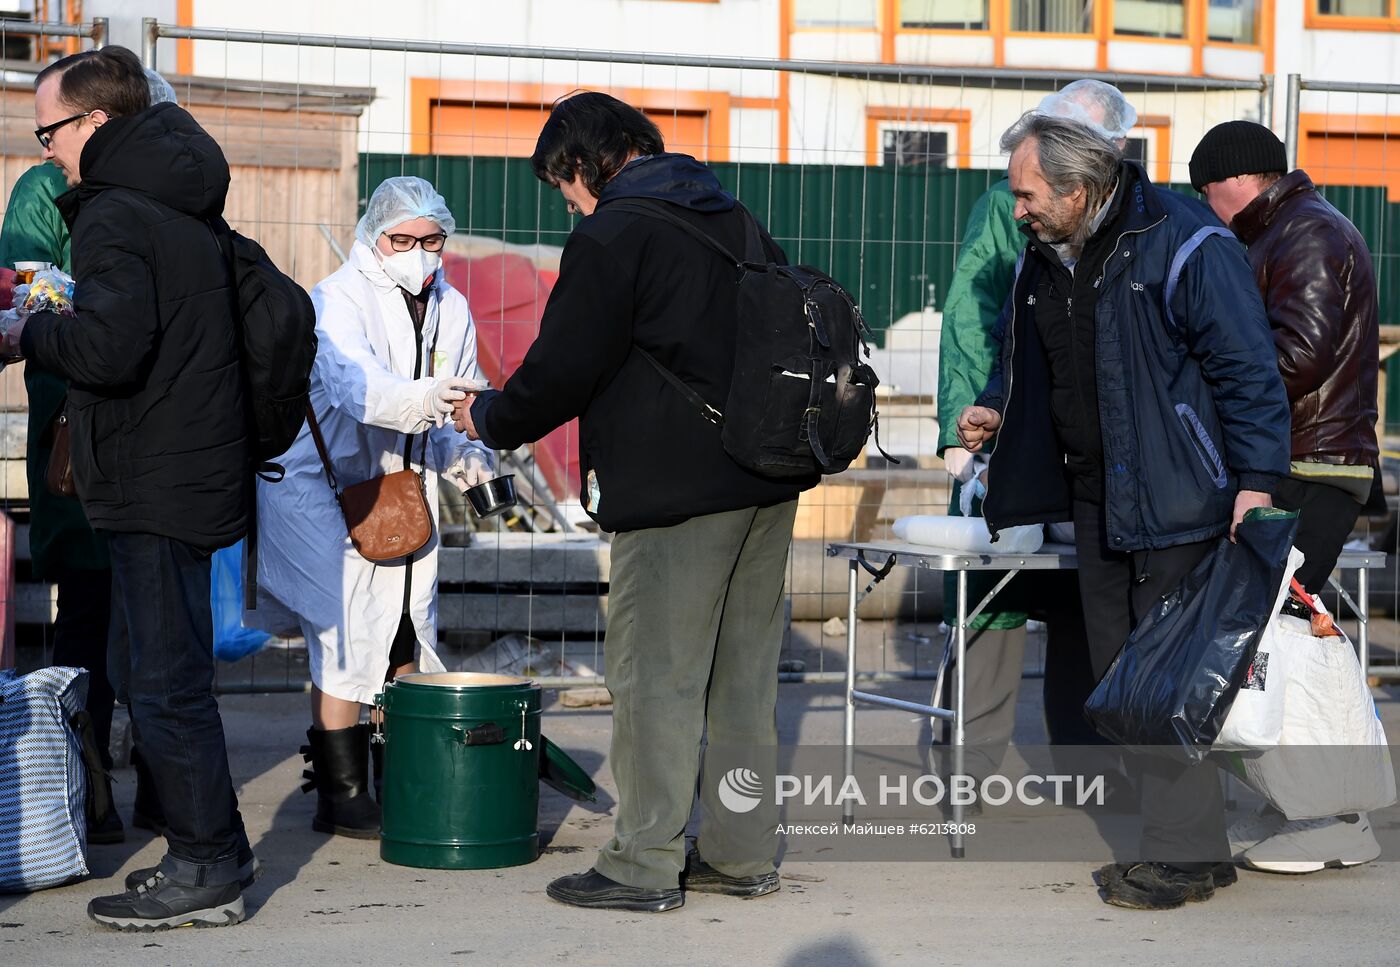 Волонтеры фонда "Доктор Лиза" помогают бездомным во время пандемии коронавируса